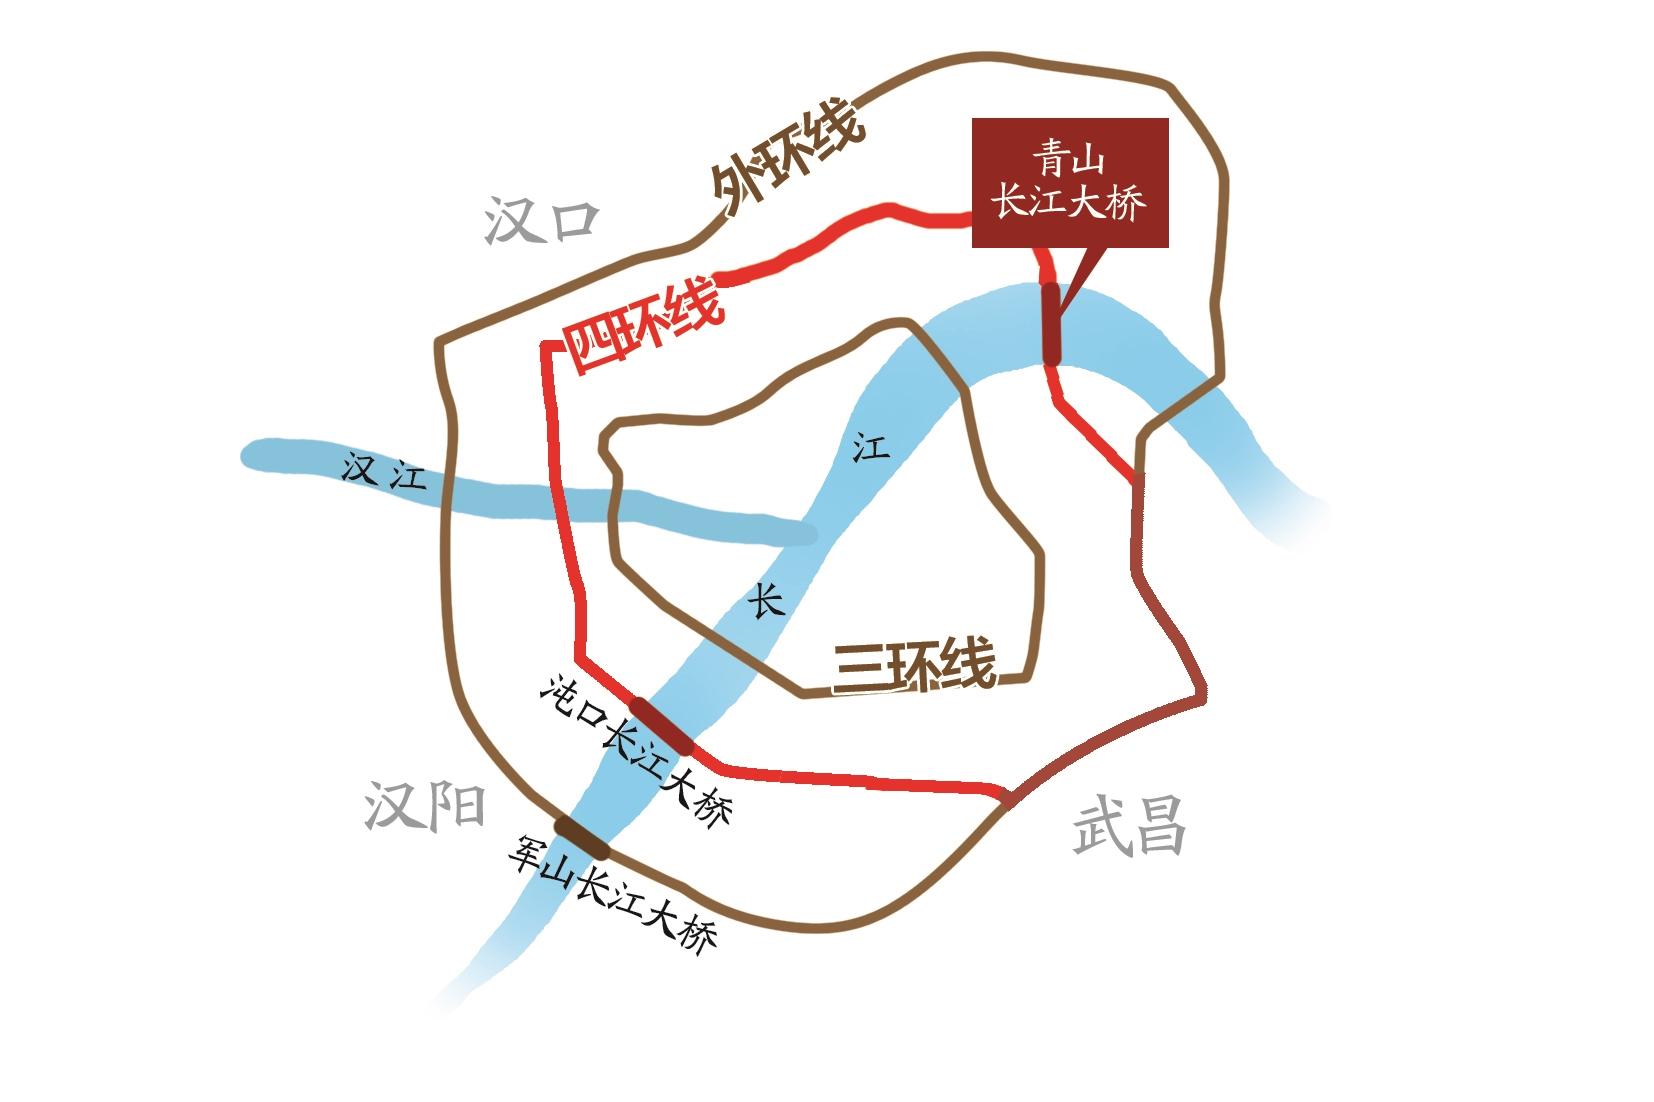 武汉四环线正式开通全线运营 148公里长的四环"画圆"